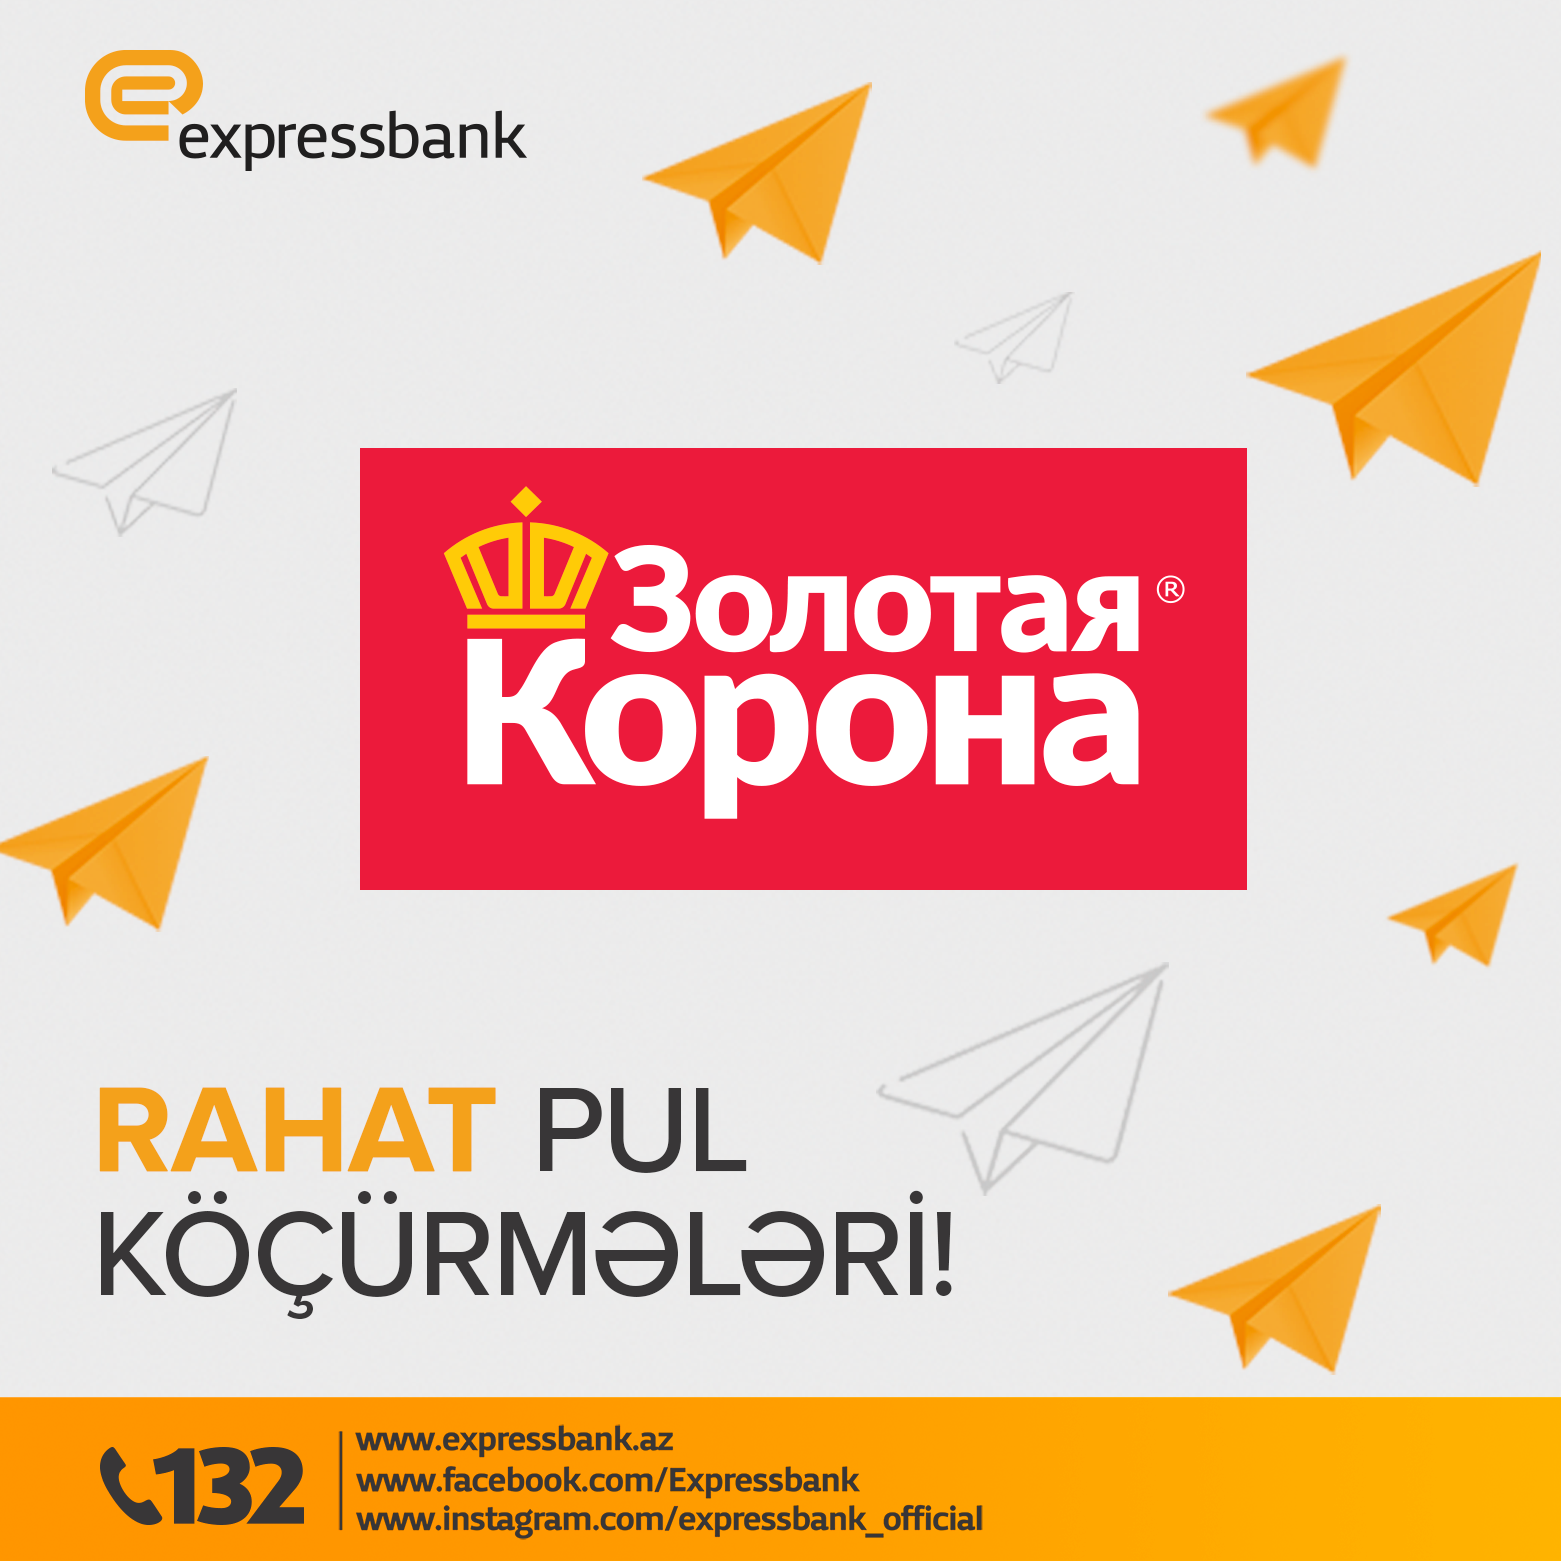 Expressbank Zolotaya Korona pul köçürmələrini daha sürətli və rahat etdi!